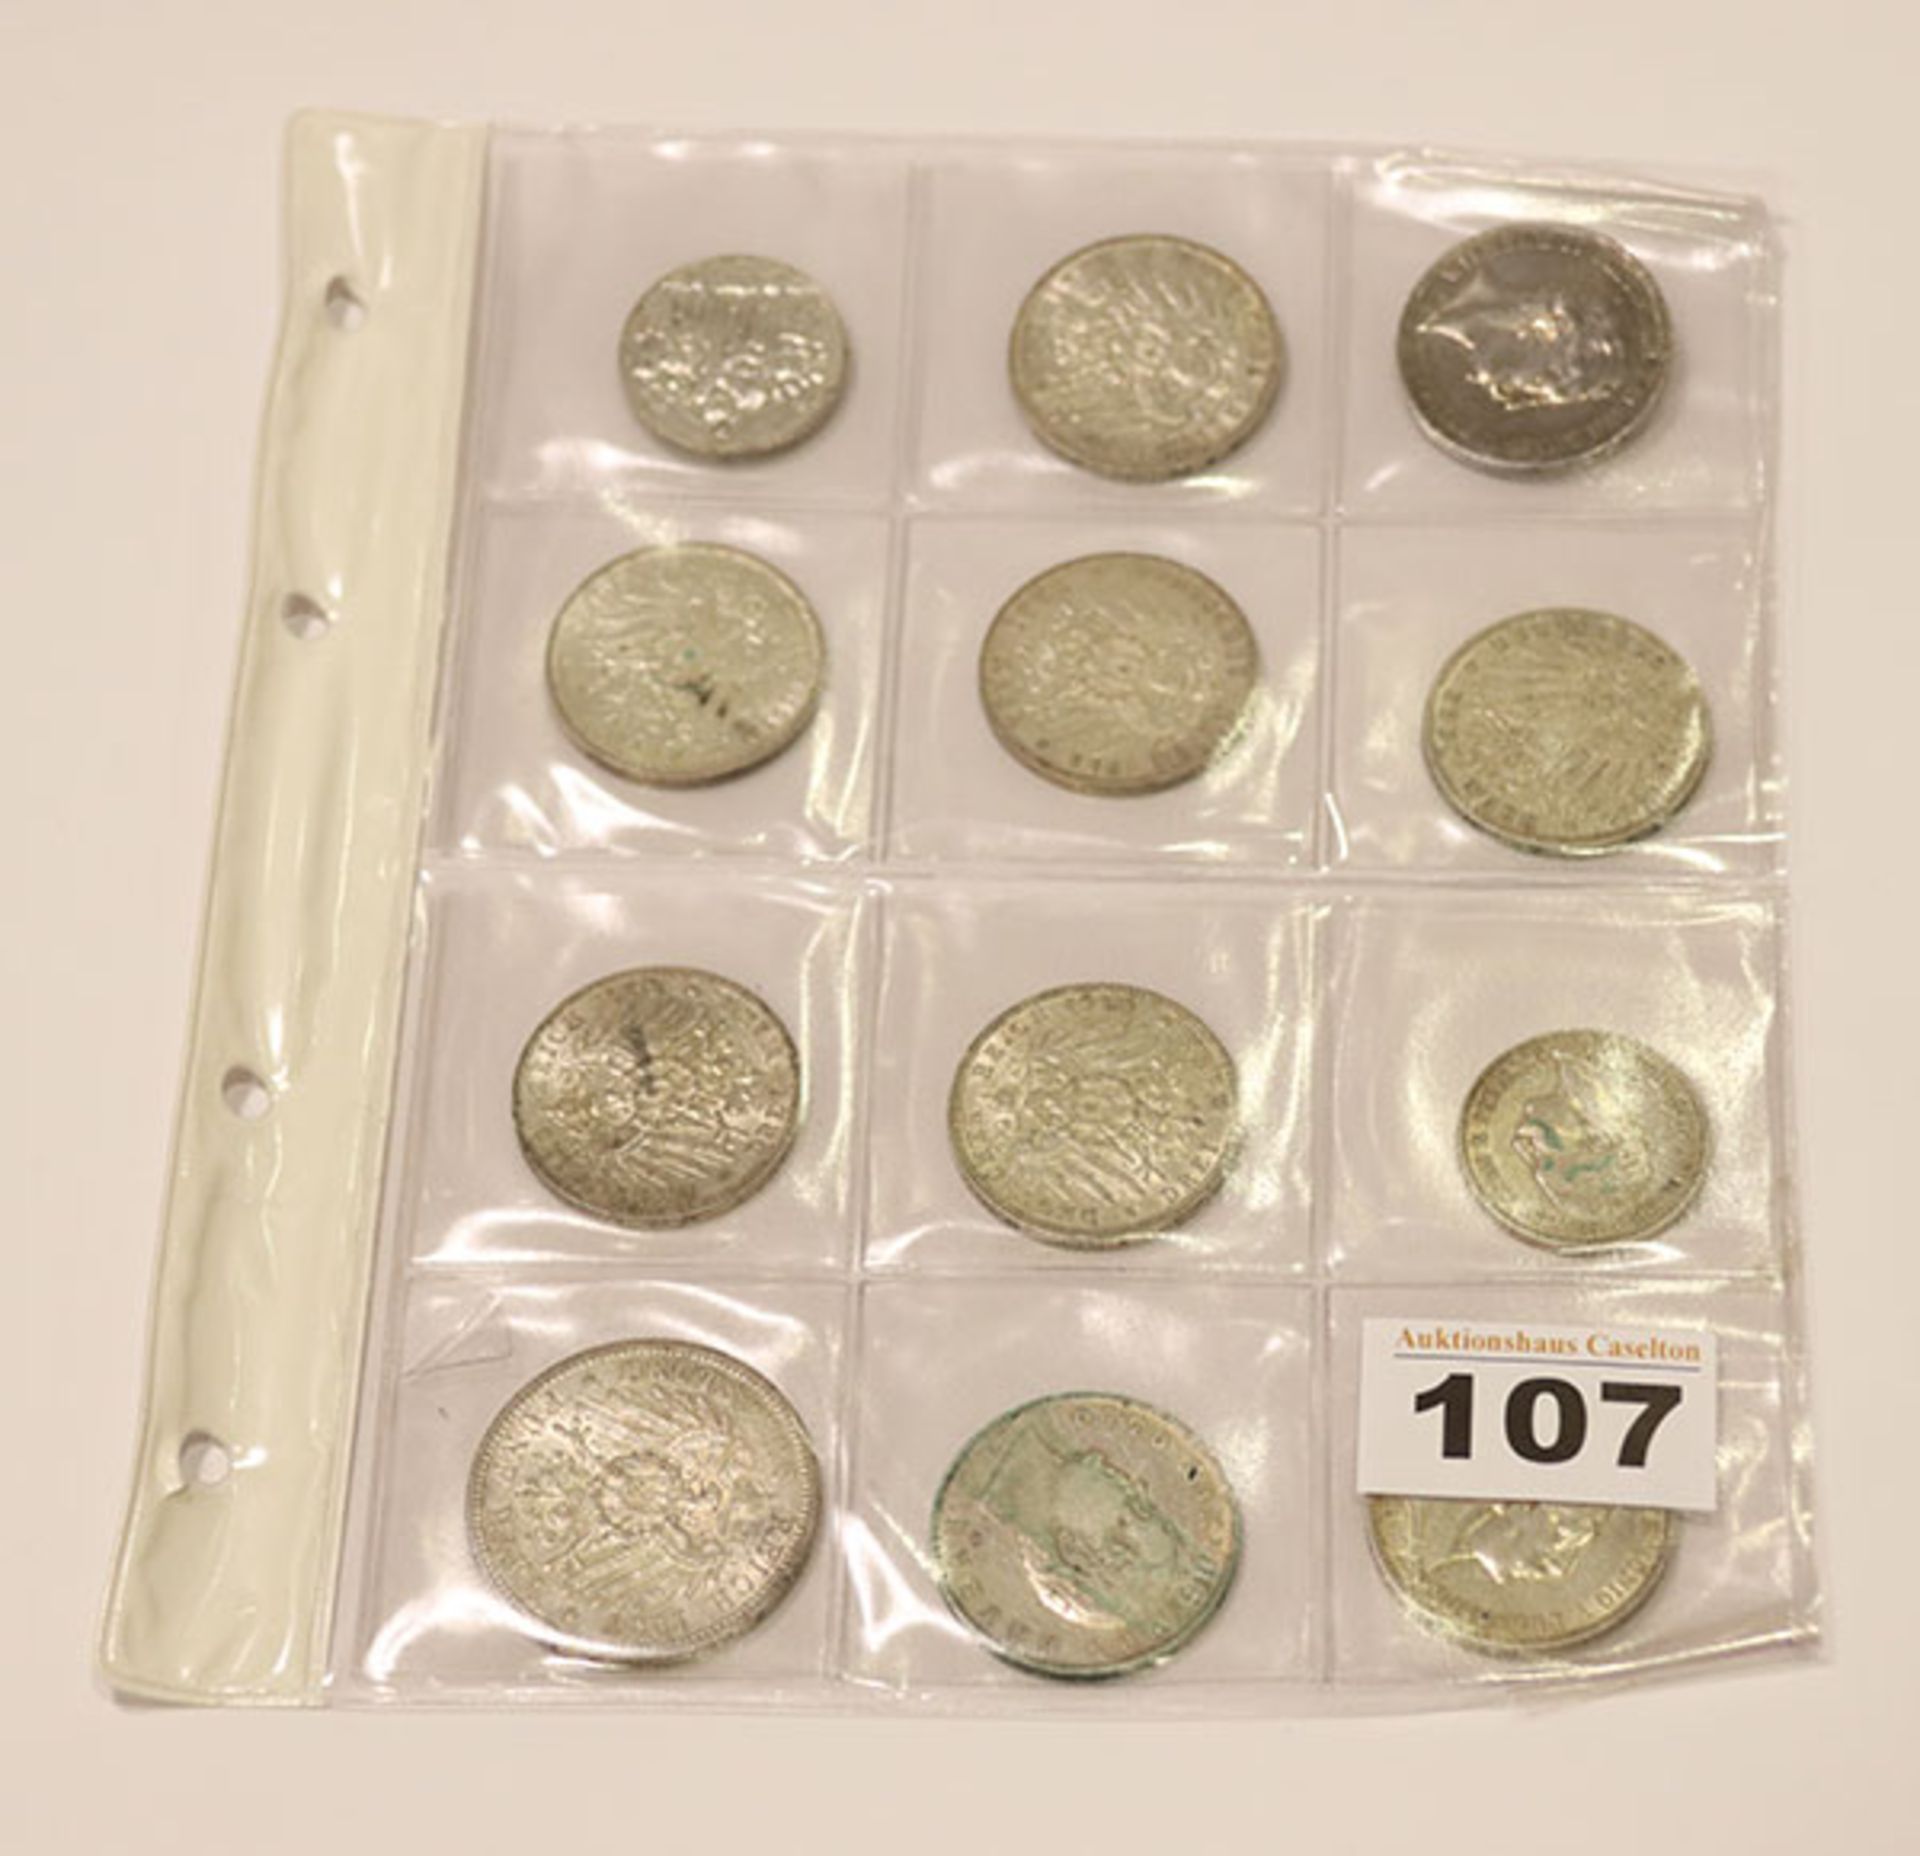 12 Kaiserreich Silbermünzen, 2 x 2, 9 x 3 und 1 x 5 Mark, 173 gr. Feinsilber